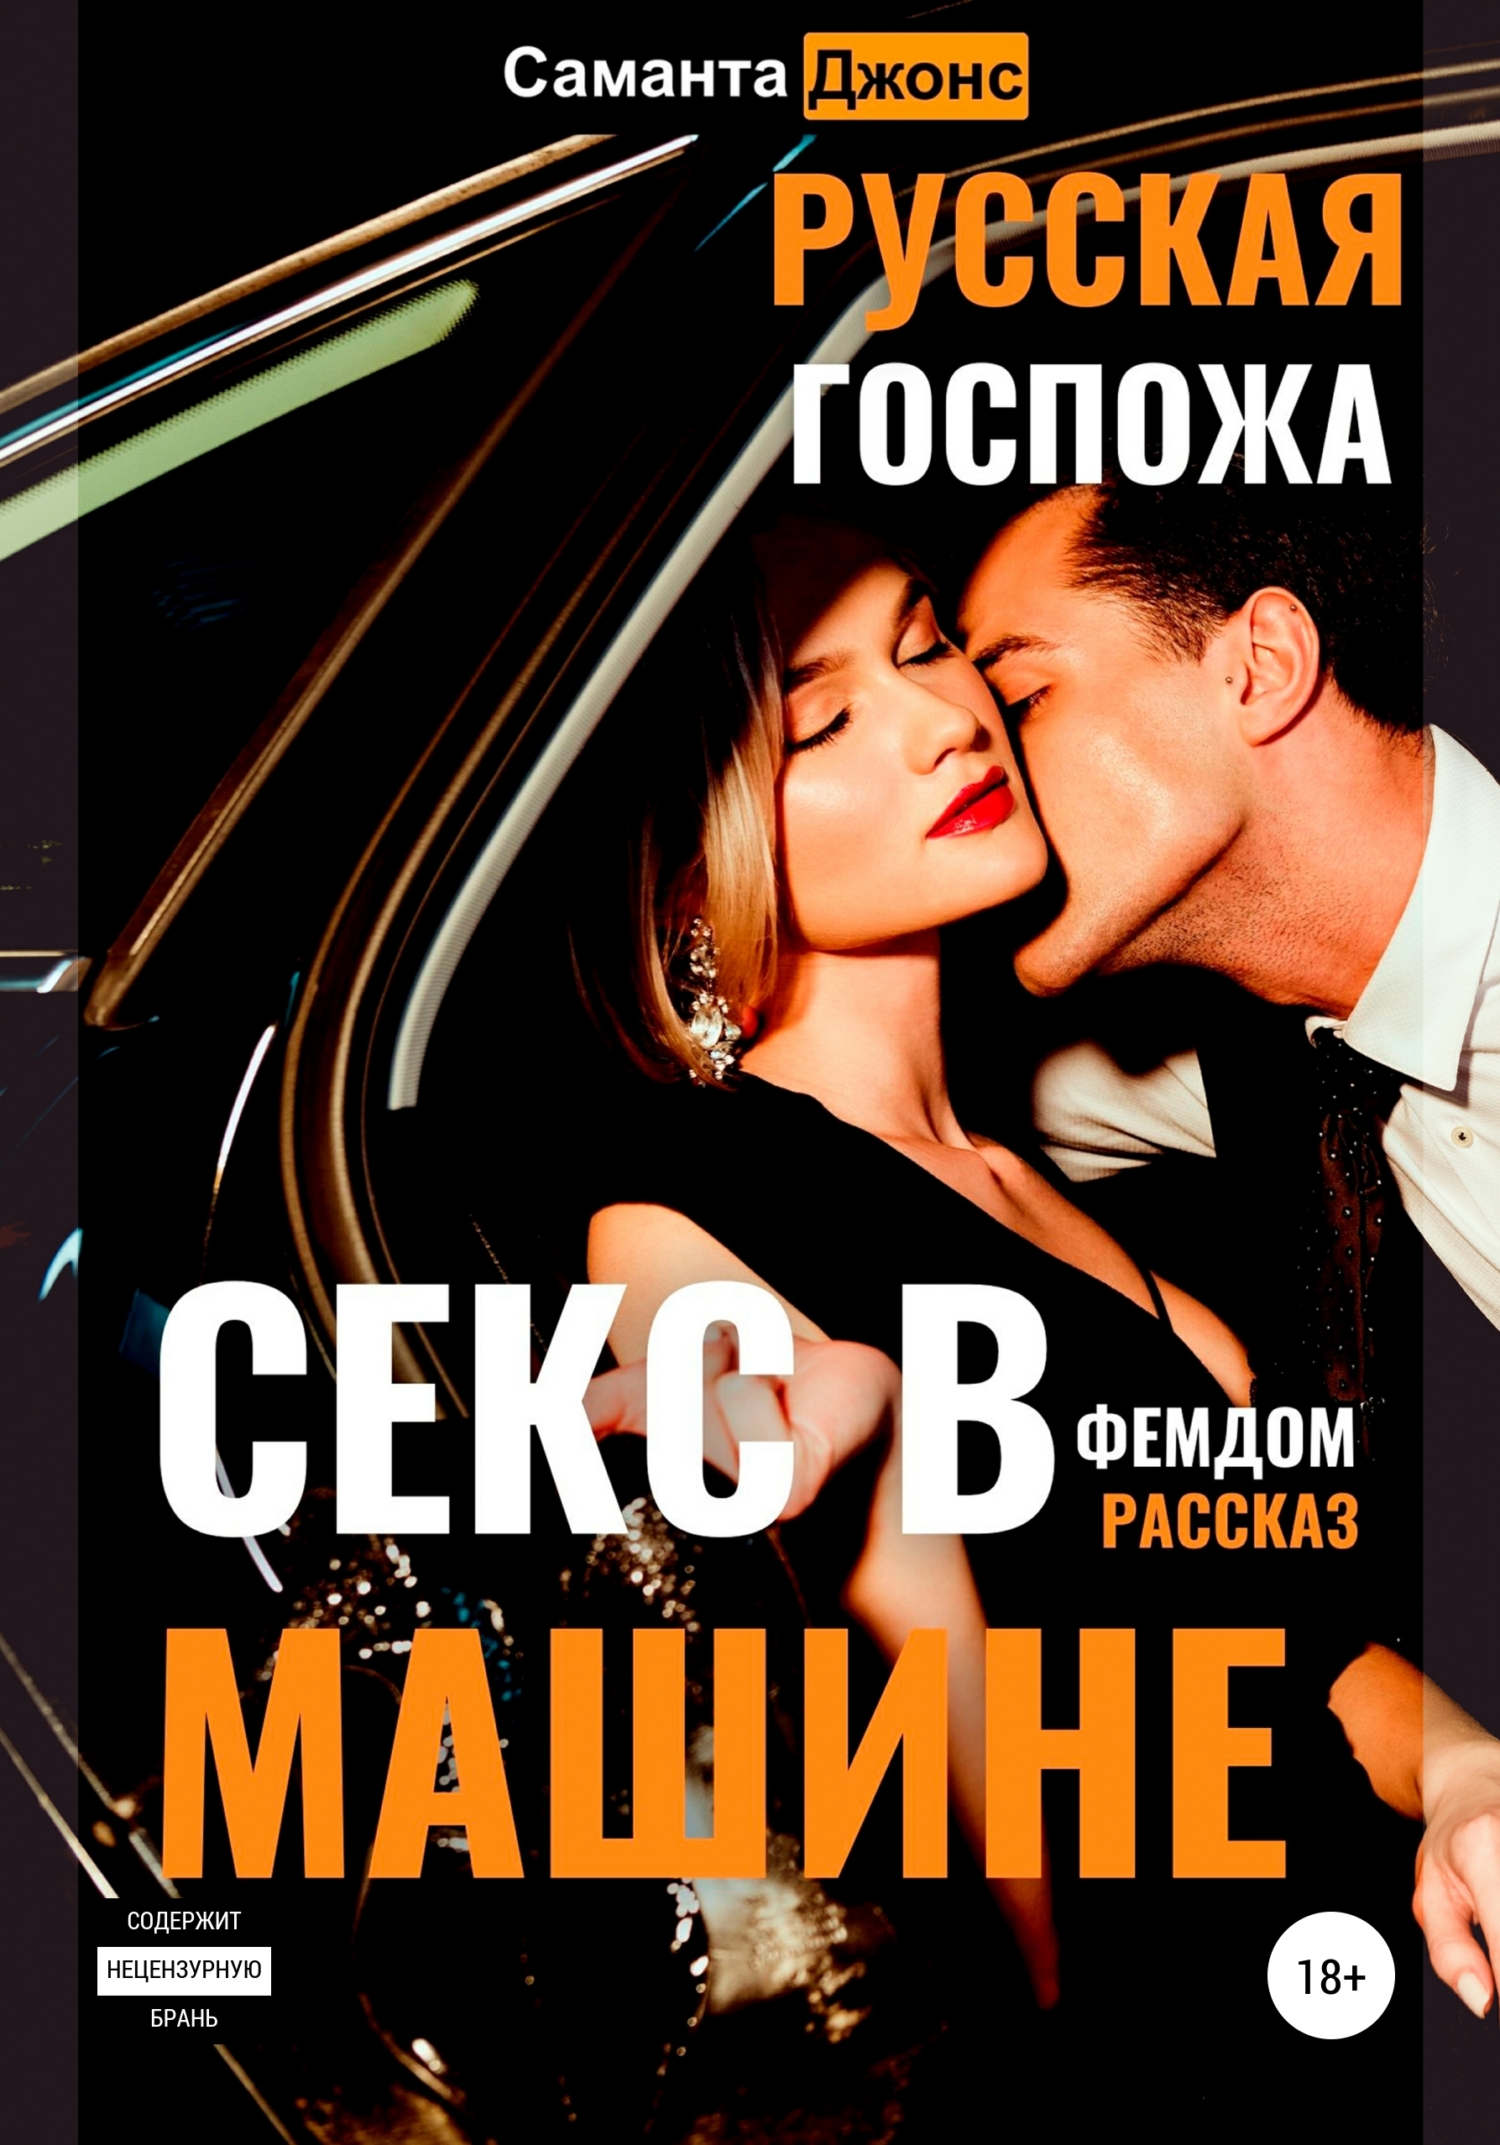 Секс в машине на русском: порно видео на эвакуатор-магнитогорск.рф